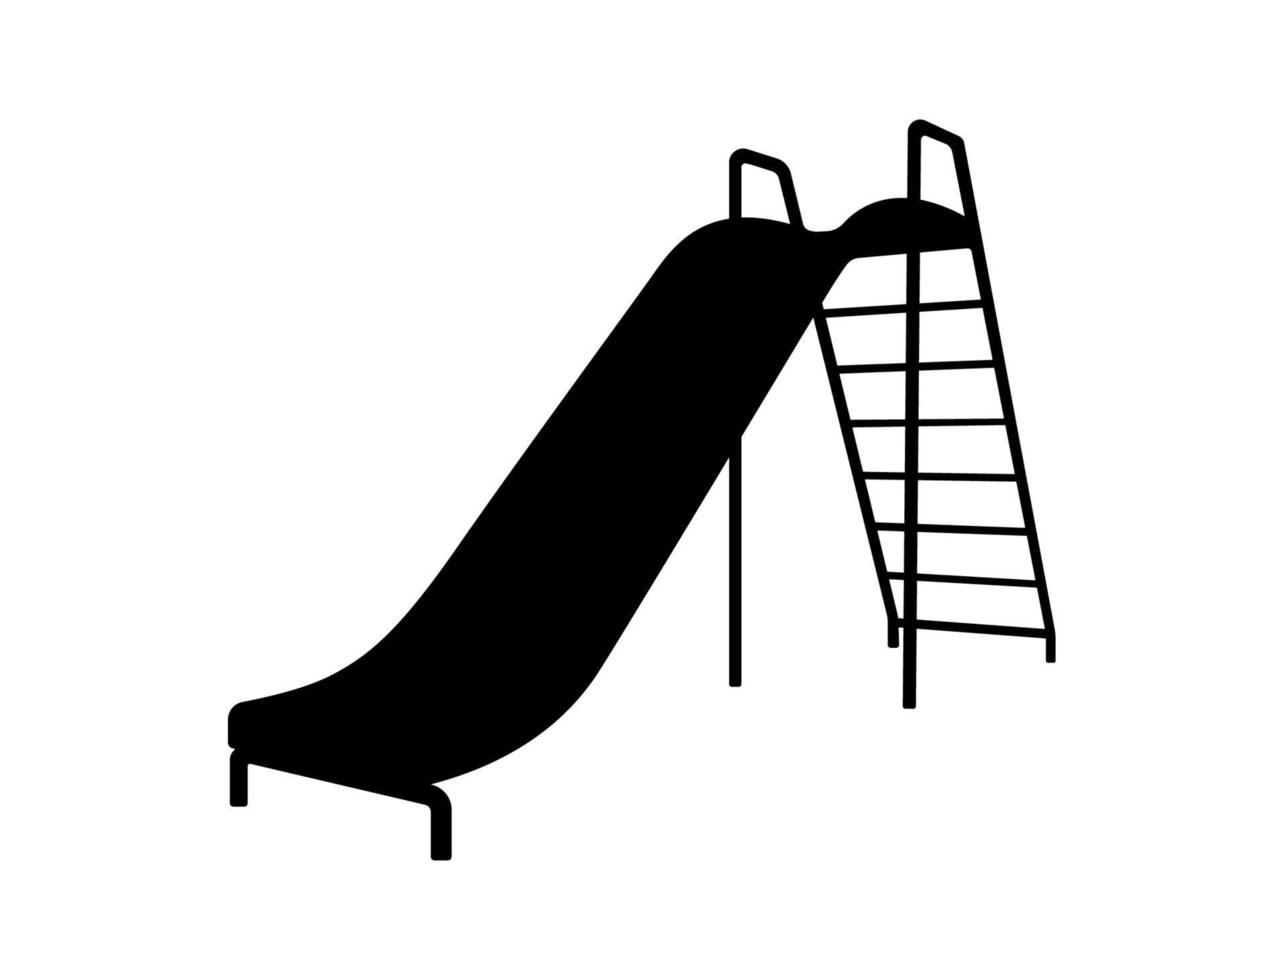 silueta del tobogán del patio de juegos, ilustración del icono de la zona de juegos para niños. vector